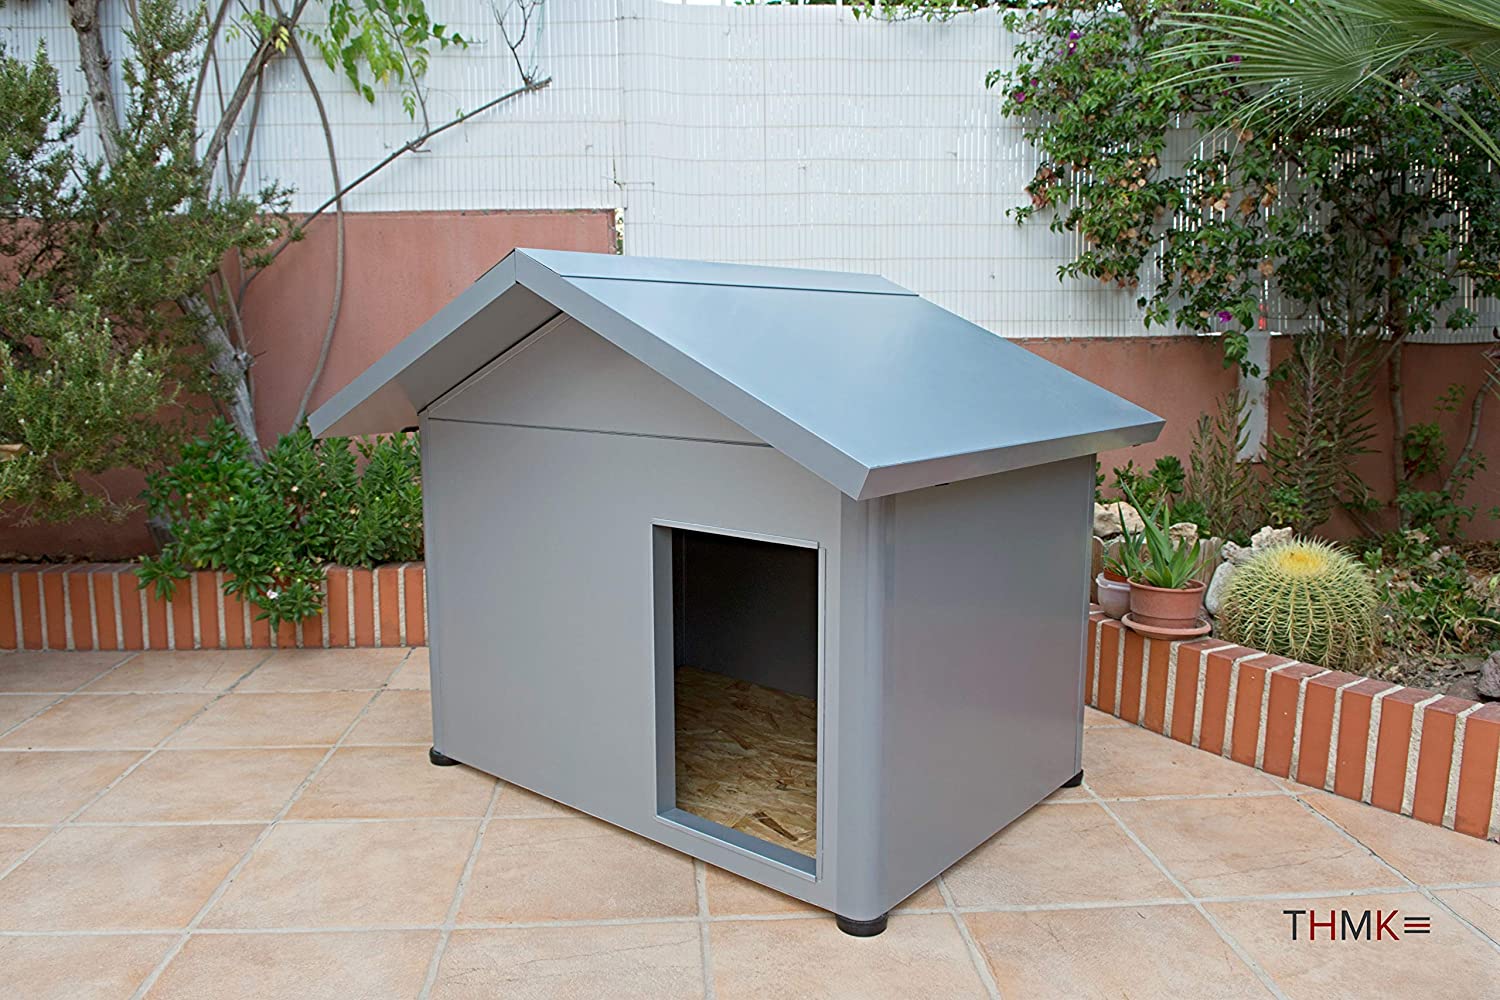  Thermoestank Caseta para Perro con Aislamiento Térmico Gris Metalizado Tamaño Mediano 